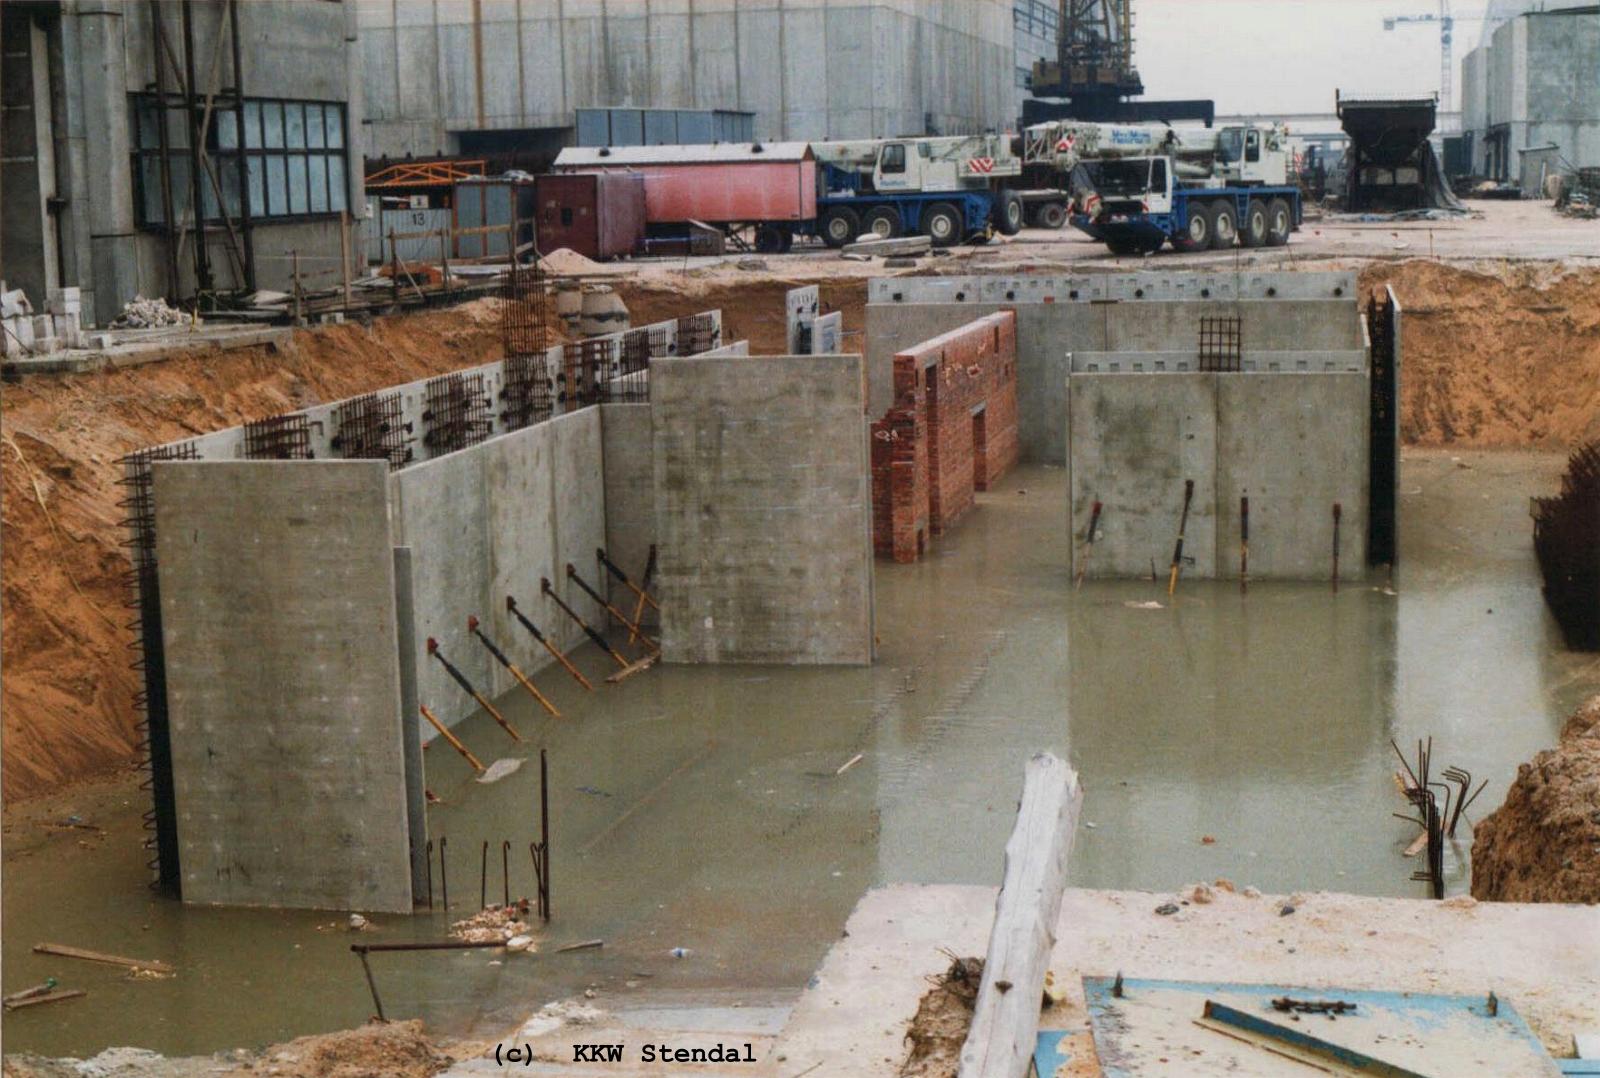  KKW Stendal, Baustelle 1990, SSÜ Strahlenschutzüberwachungsgebäude, Baugrube
 Kellergeschoß 